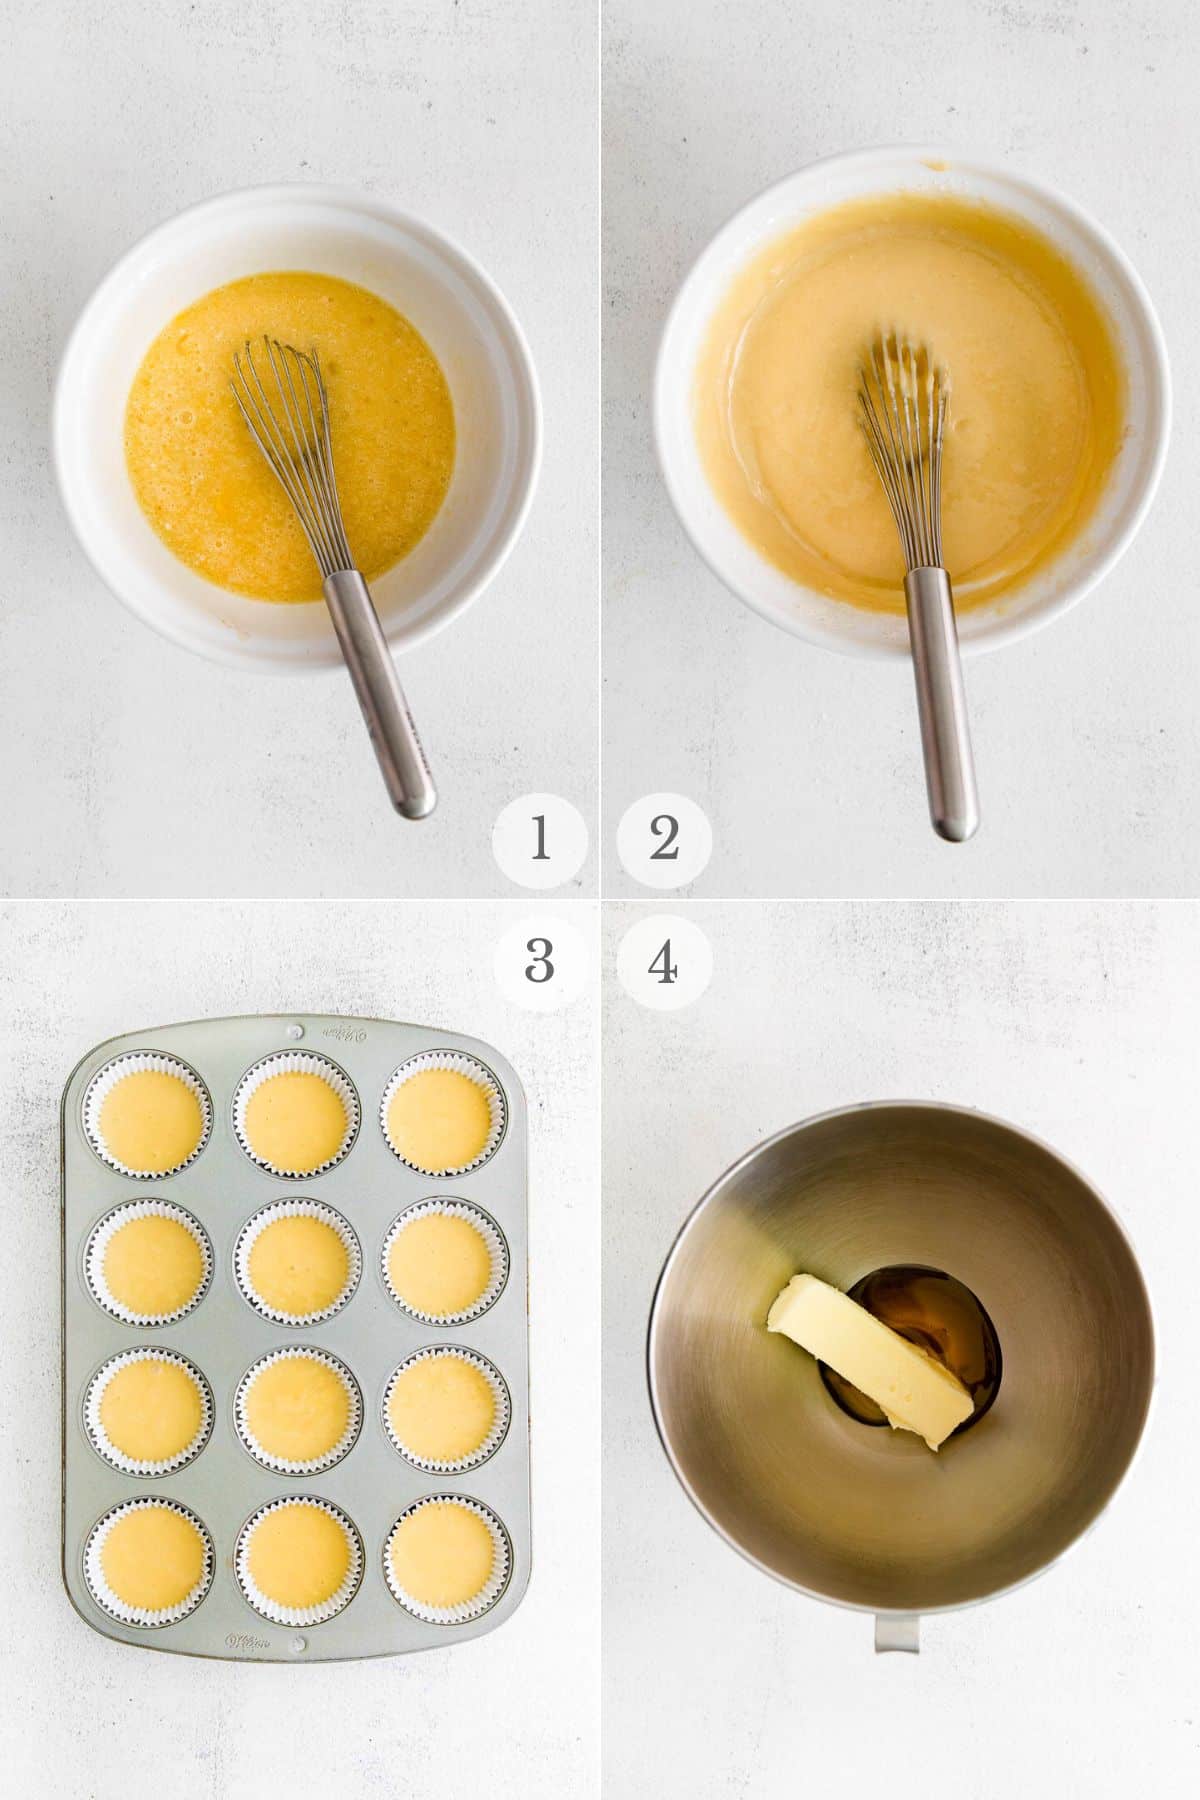 honey cupcakes recipe steps 1-4.